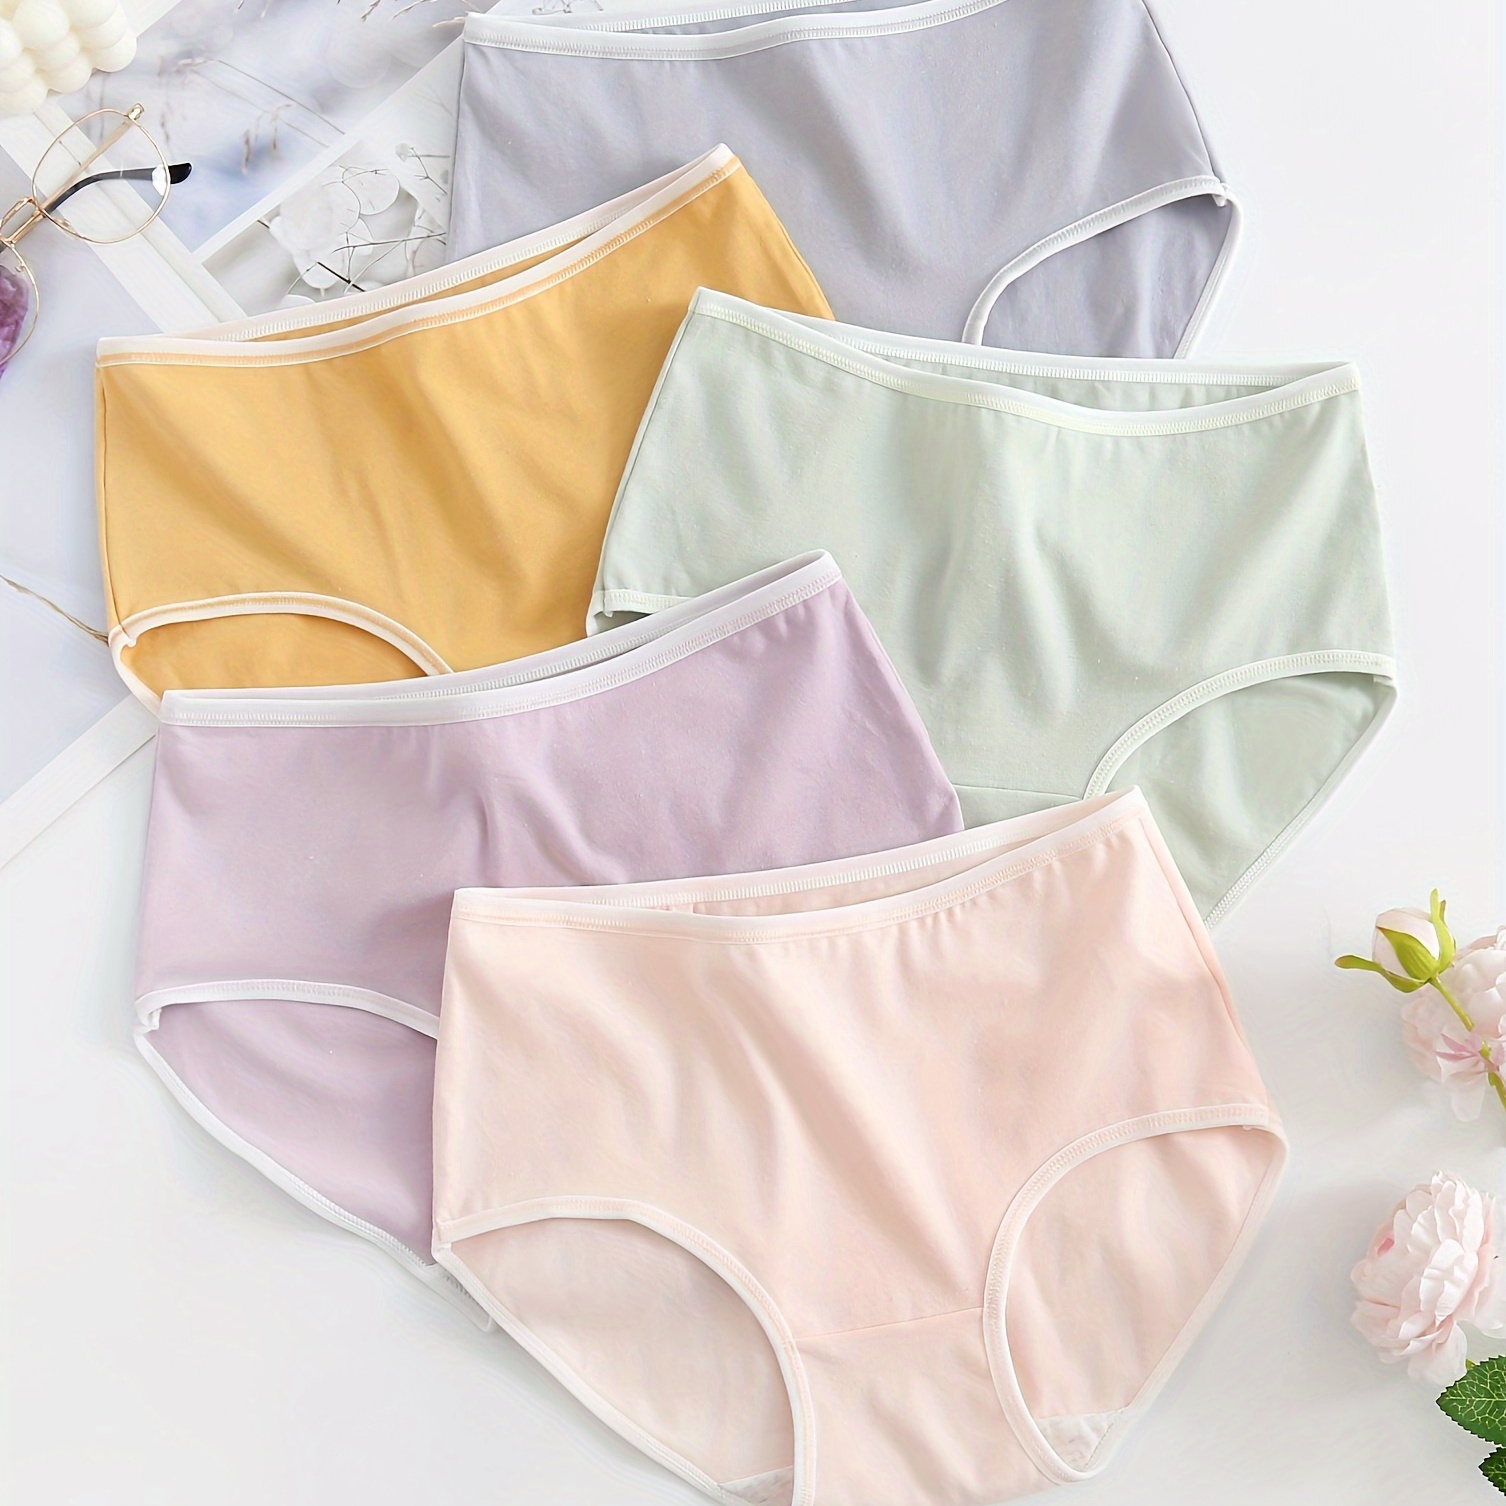 

5 Pcs Simple Cotton Panties, Comfy & Breathable Mid-rise Stretch Briefs Panties, Women's Lingerie & Underwear